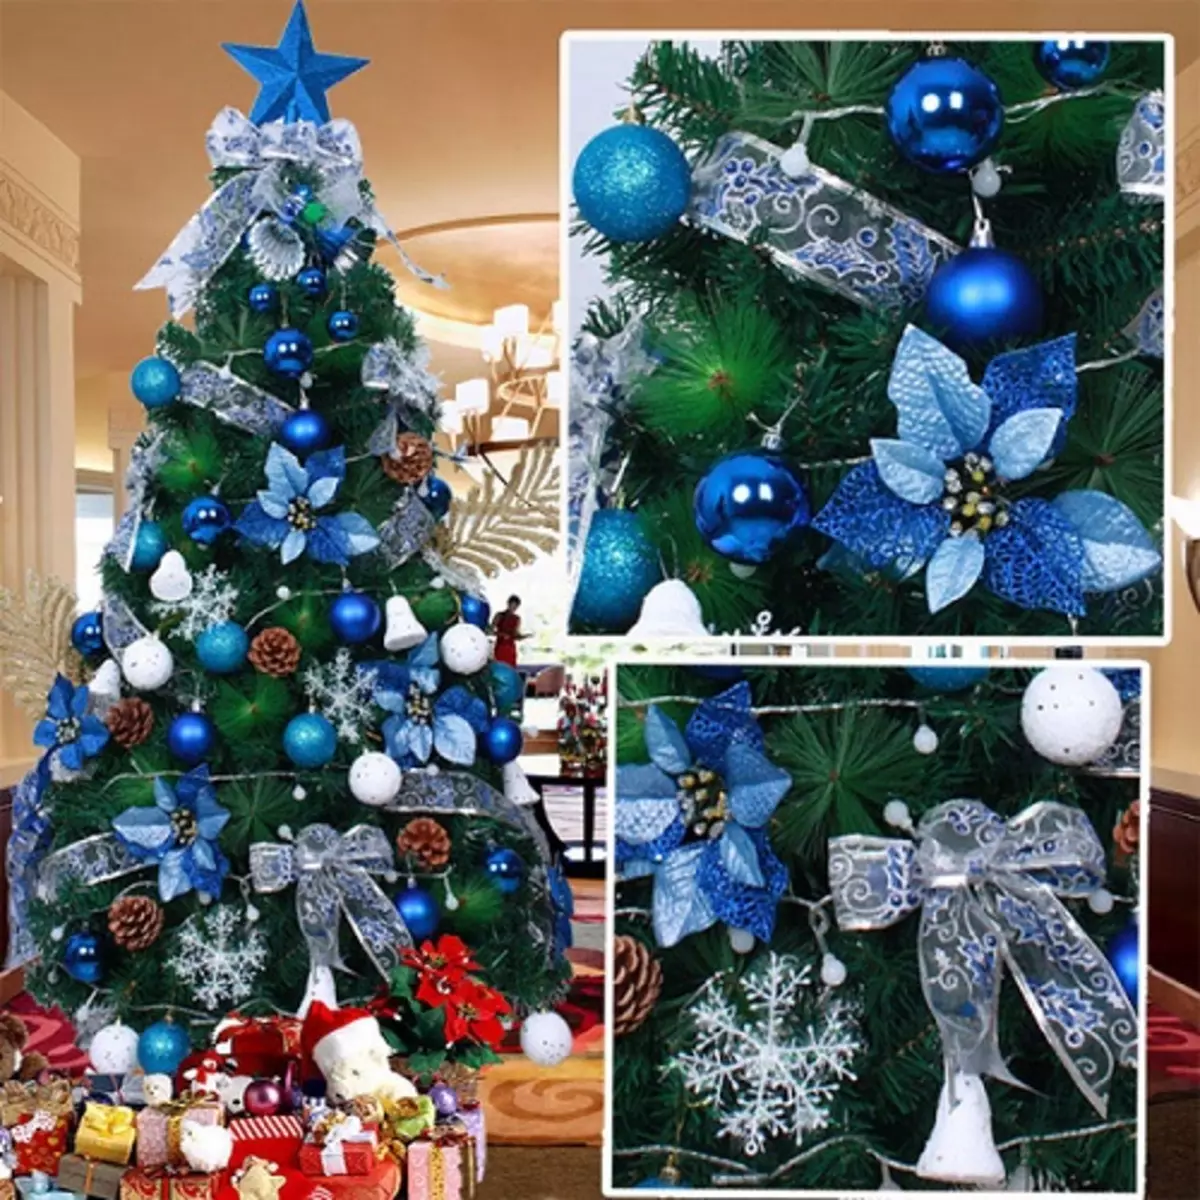 Làm thế nào để trang trí cây Giáng sinh màu xanh lam? 30 ảnh Làm thế nào để ăn mặc với những quả bóng và các trang trí khác trong tông màu xanh và bạc? 7627_29